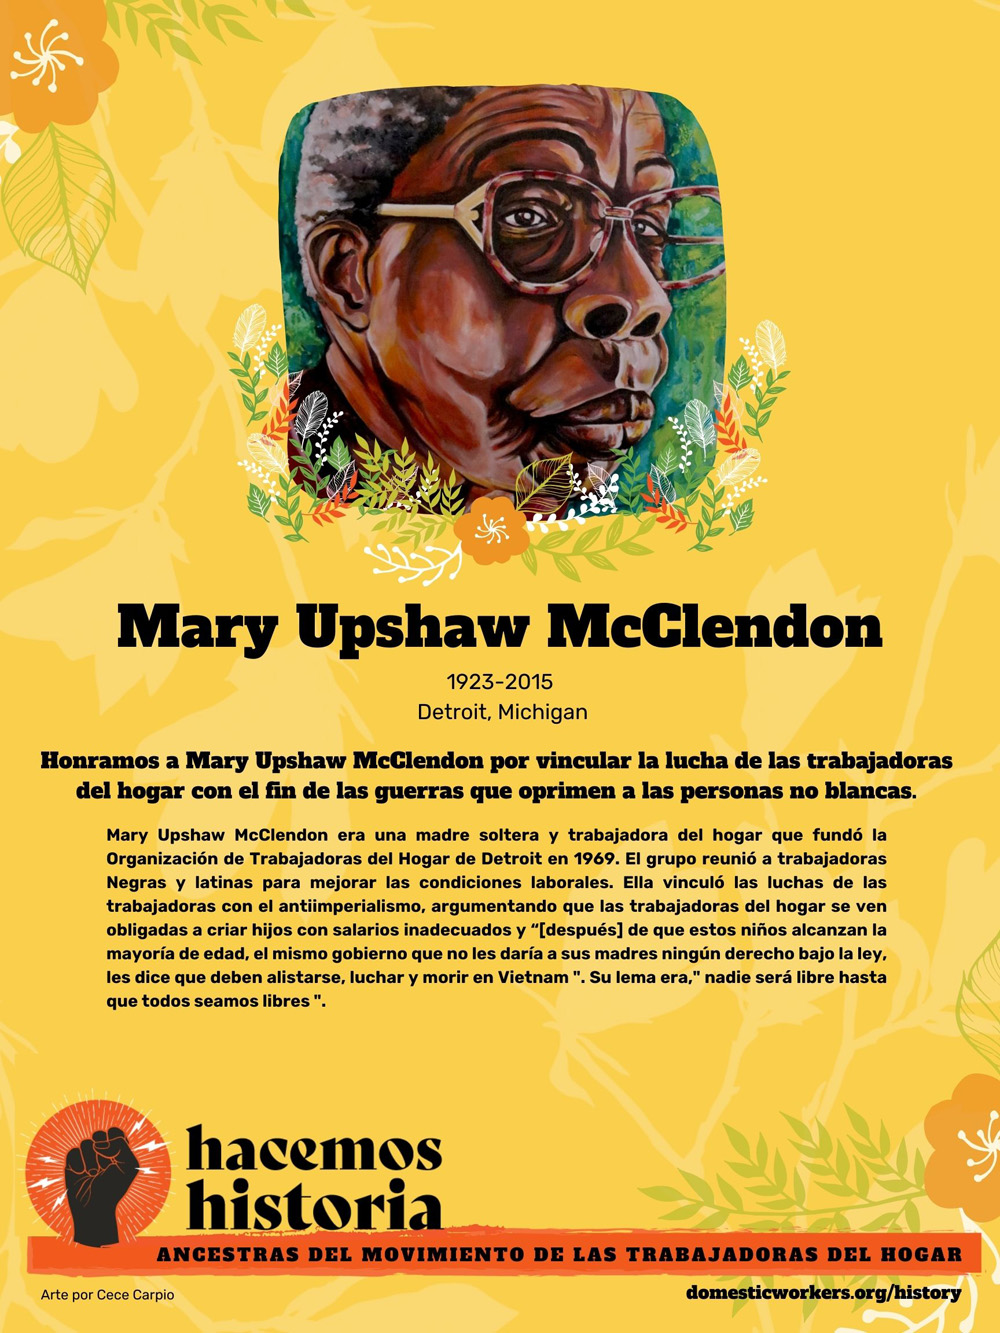 Retratos de las ancestras del movimiento de trabajadoras de hogar: Mary Upshaw McClendon